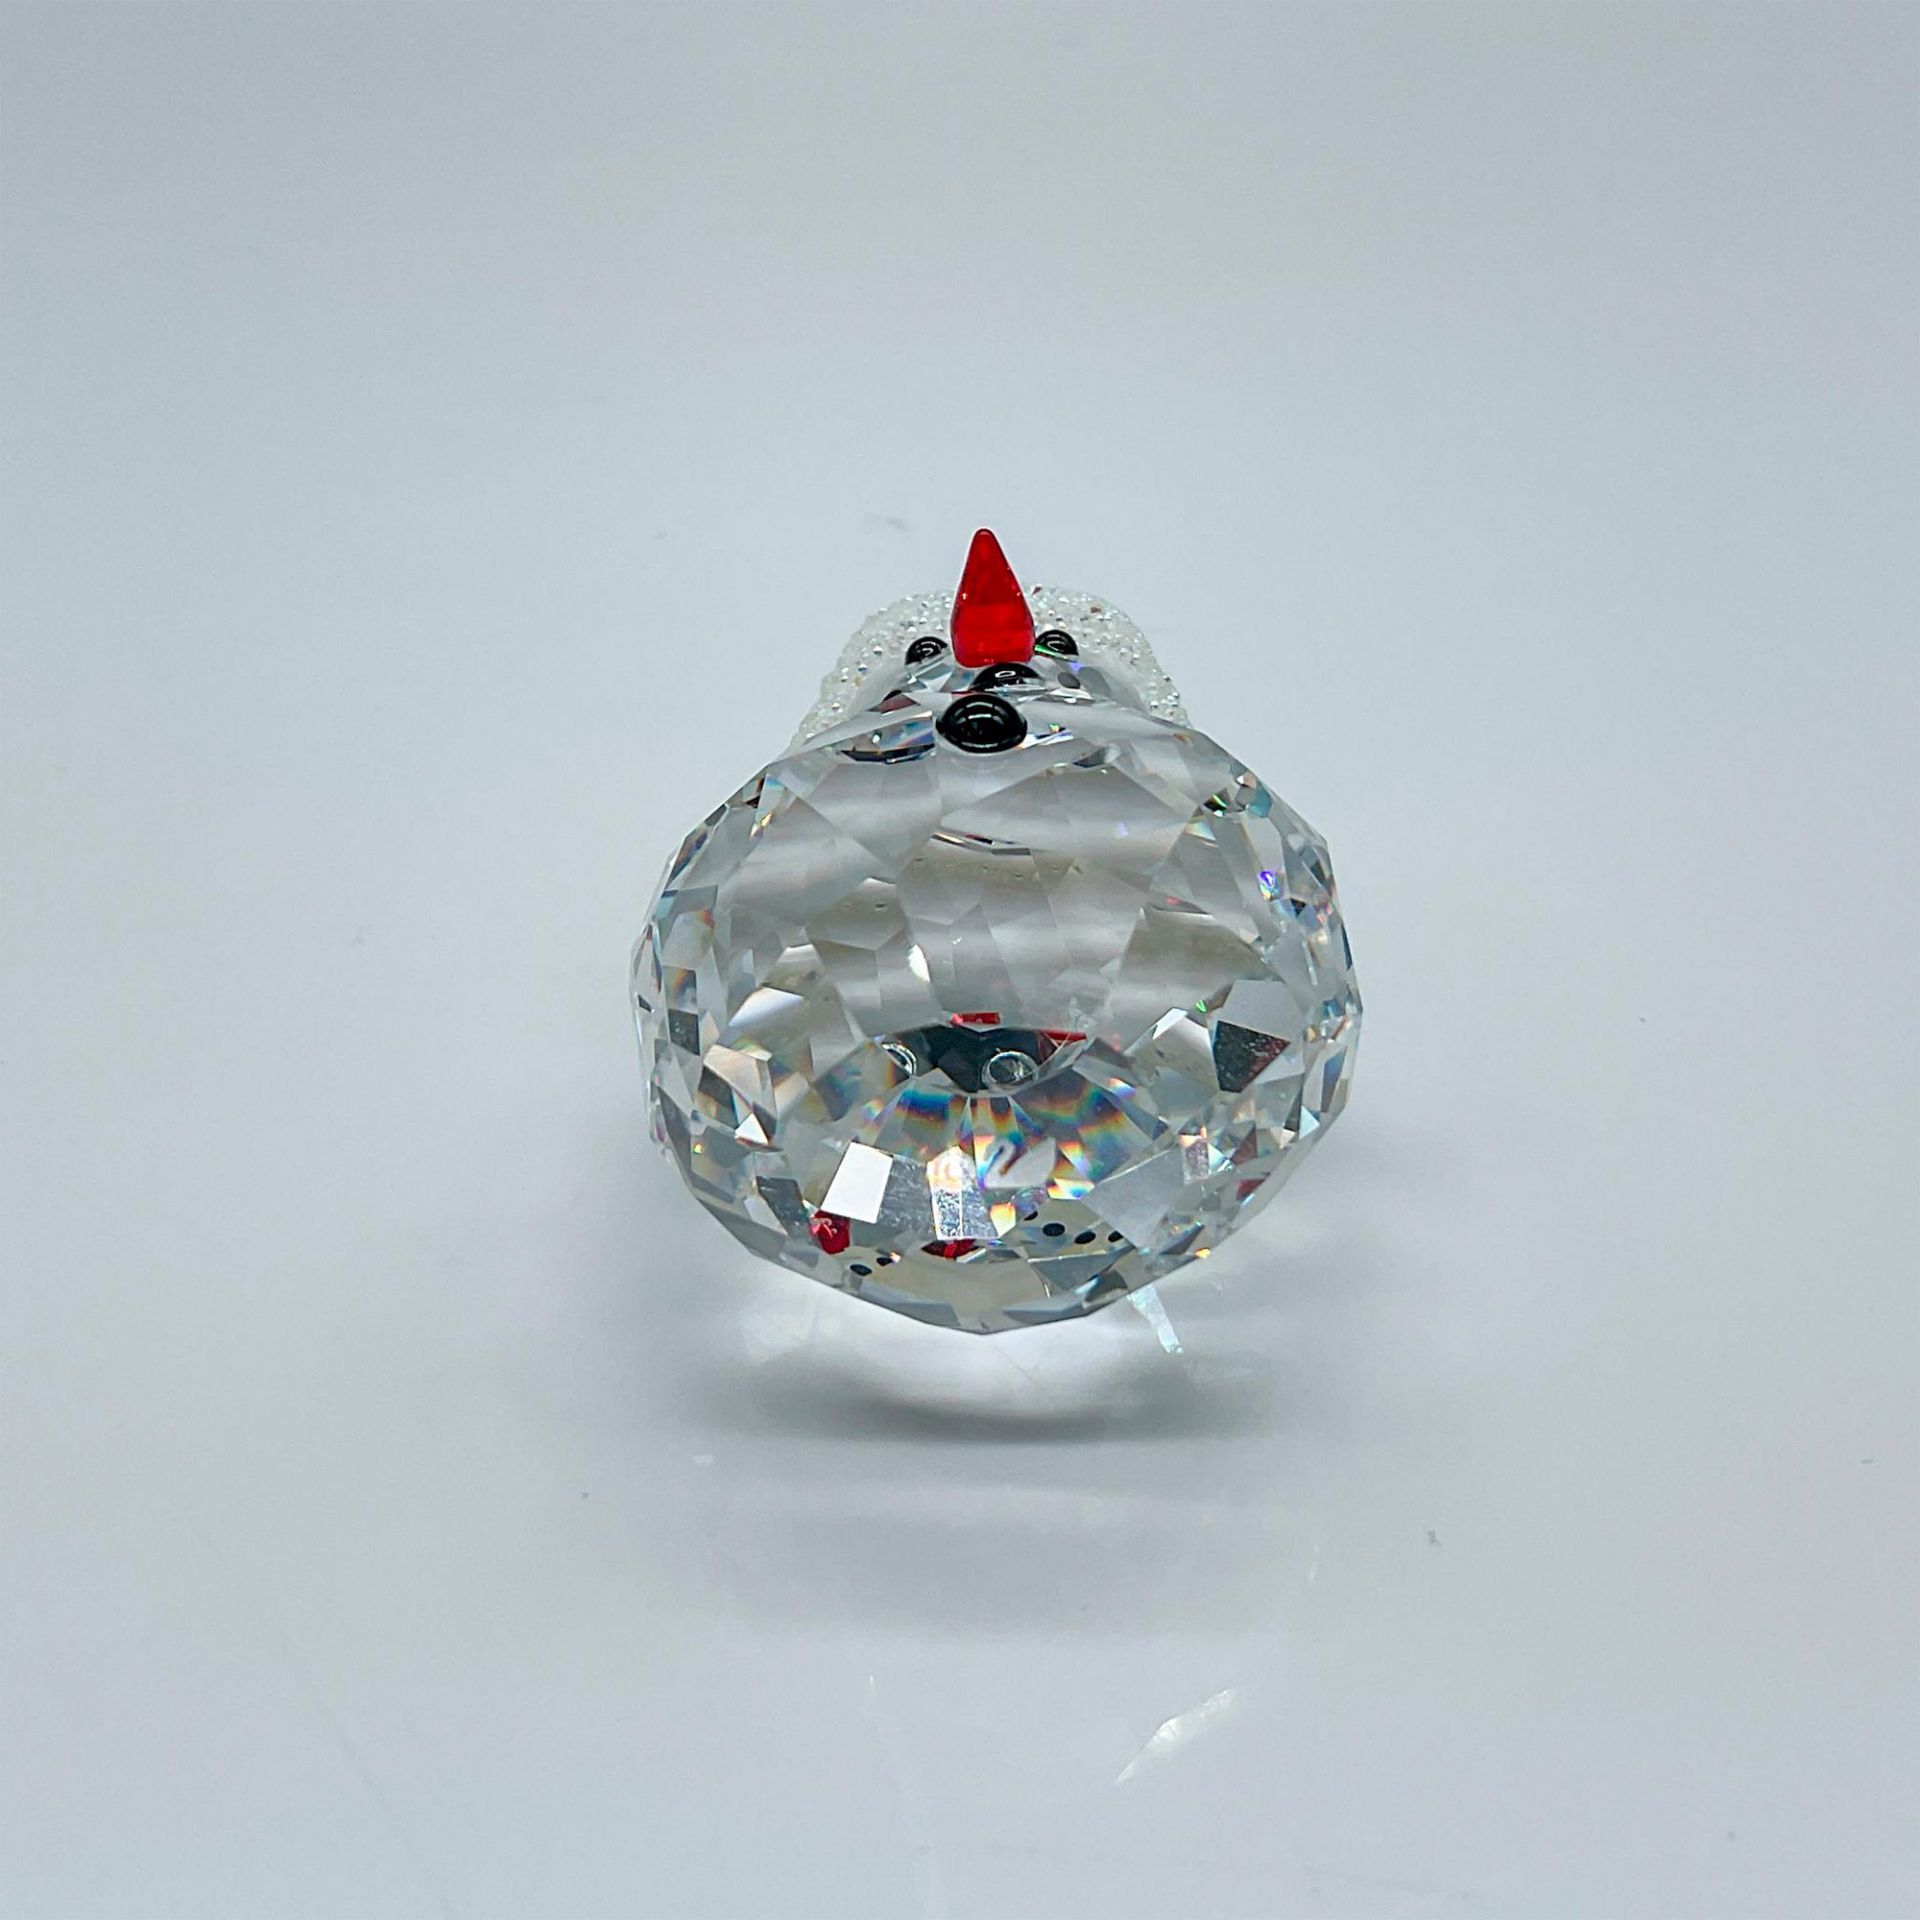 Swarovski Crystal Figurine, Snowman - Bild 3 aus 3